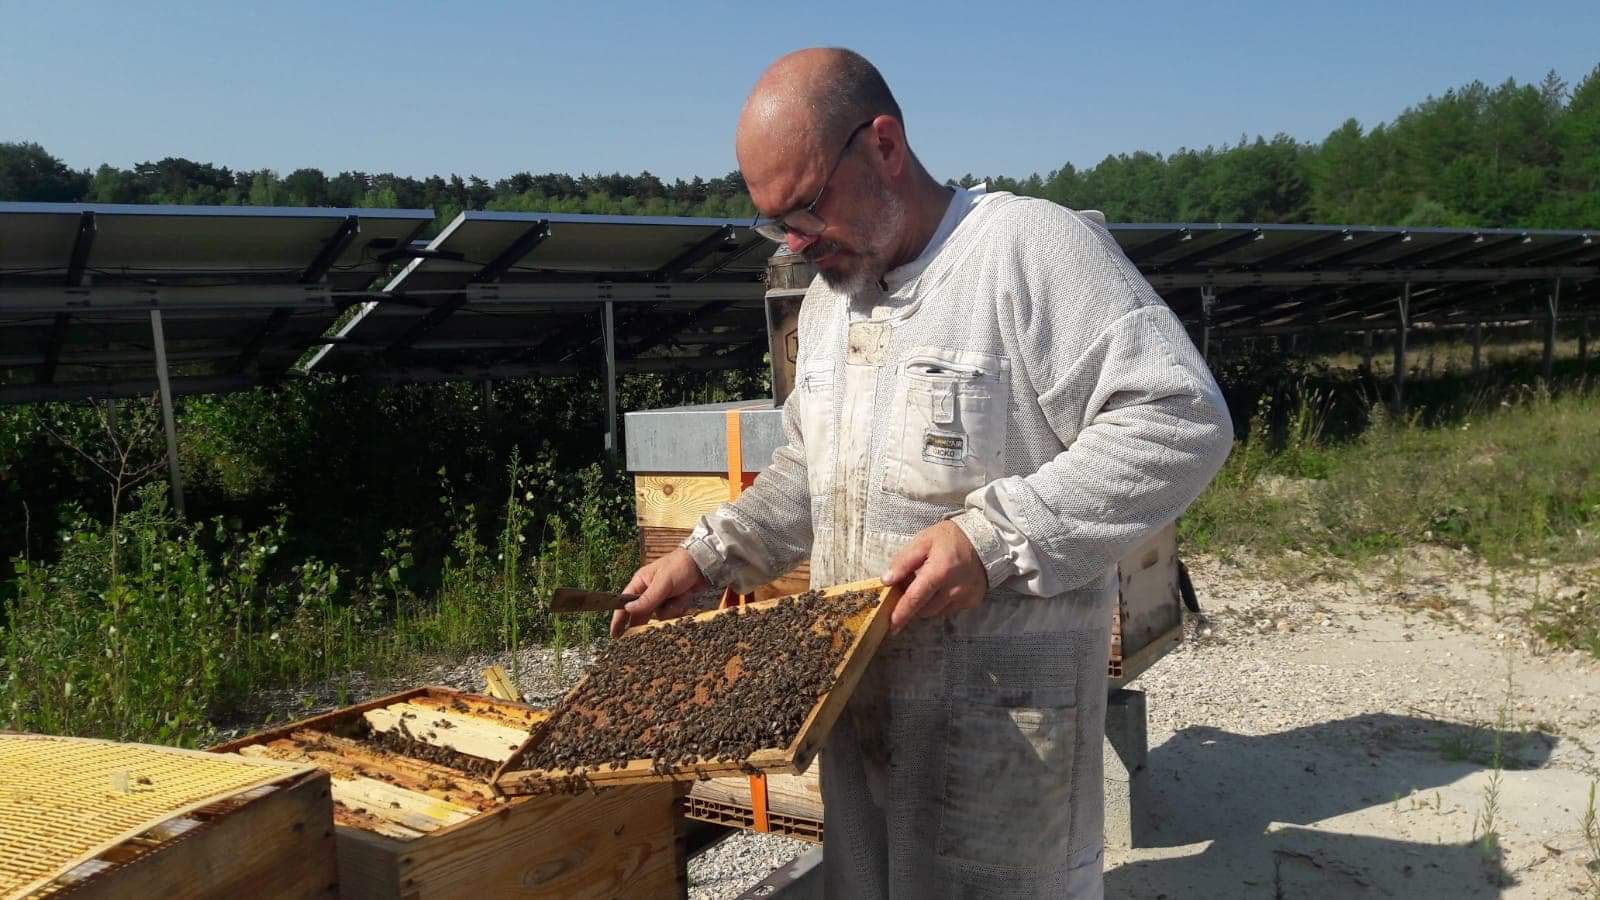 Le rucher de la Dame blanche inspectant les ruches du parc de panneaux photovoltaïques d'APEX énergies ou d'EREA technologie